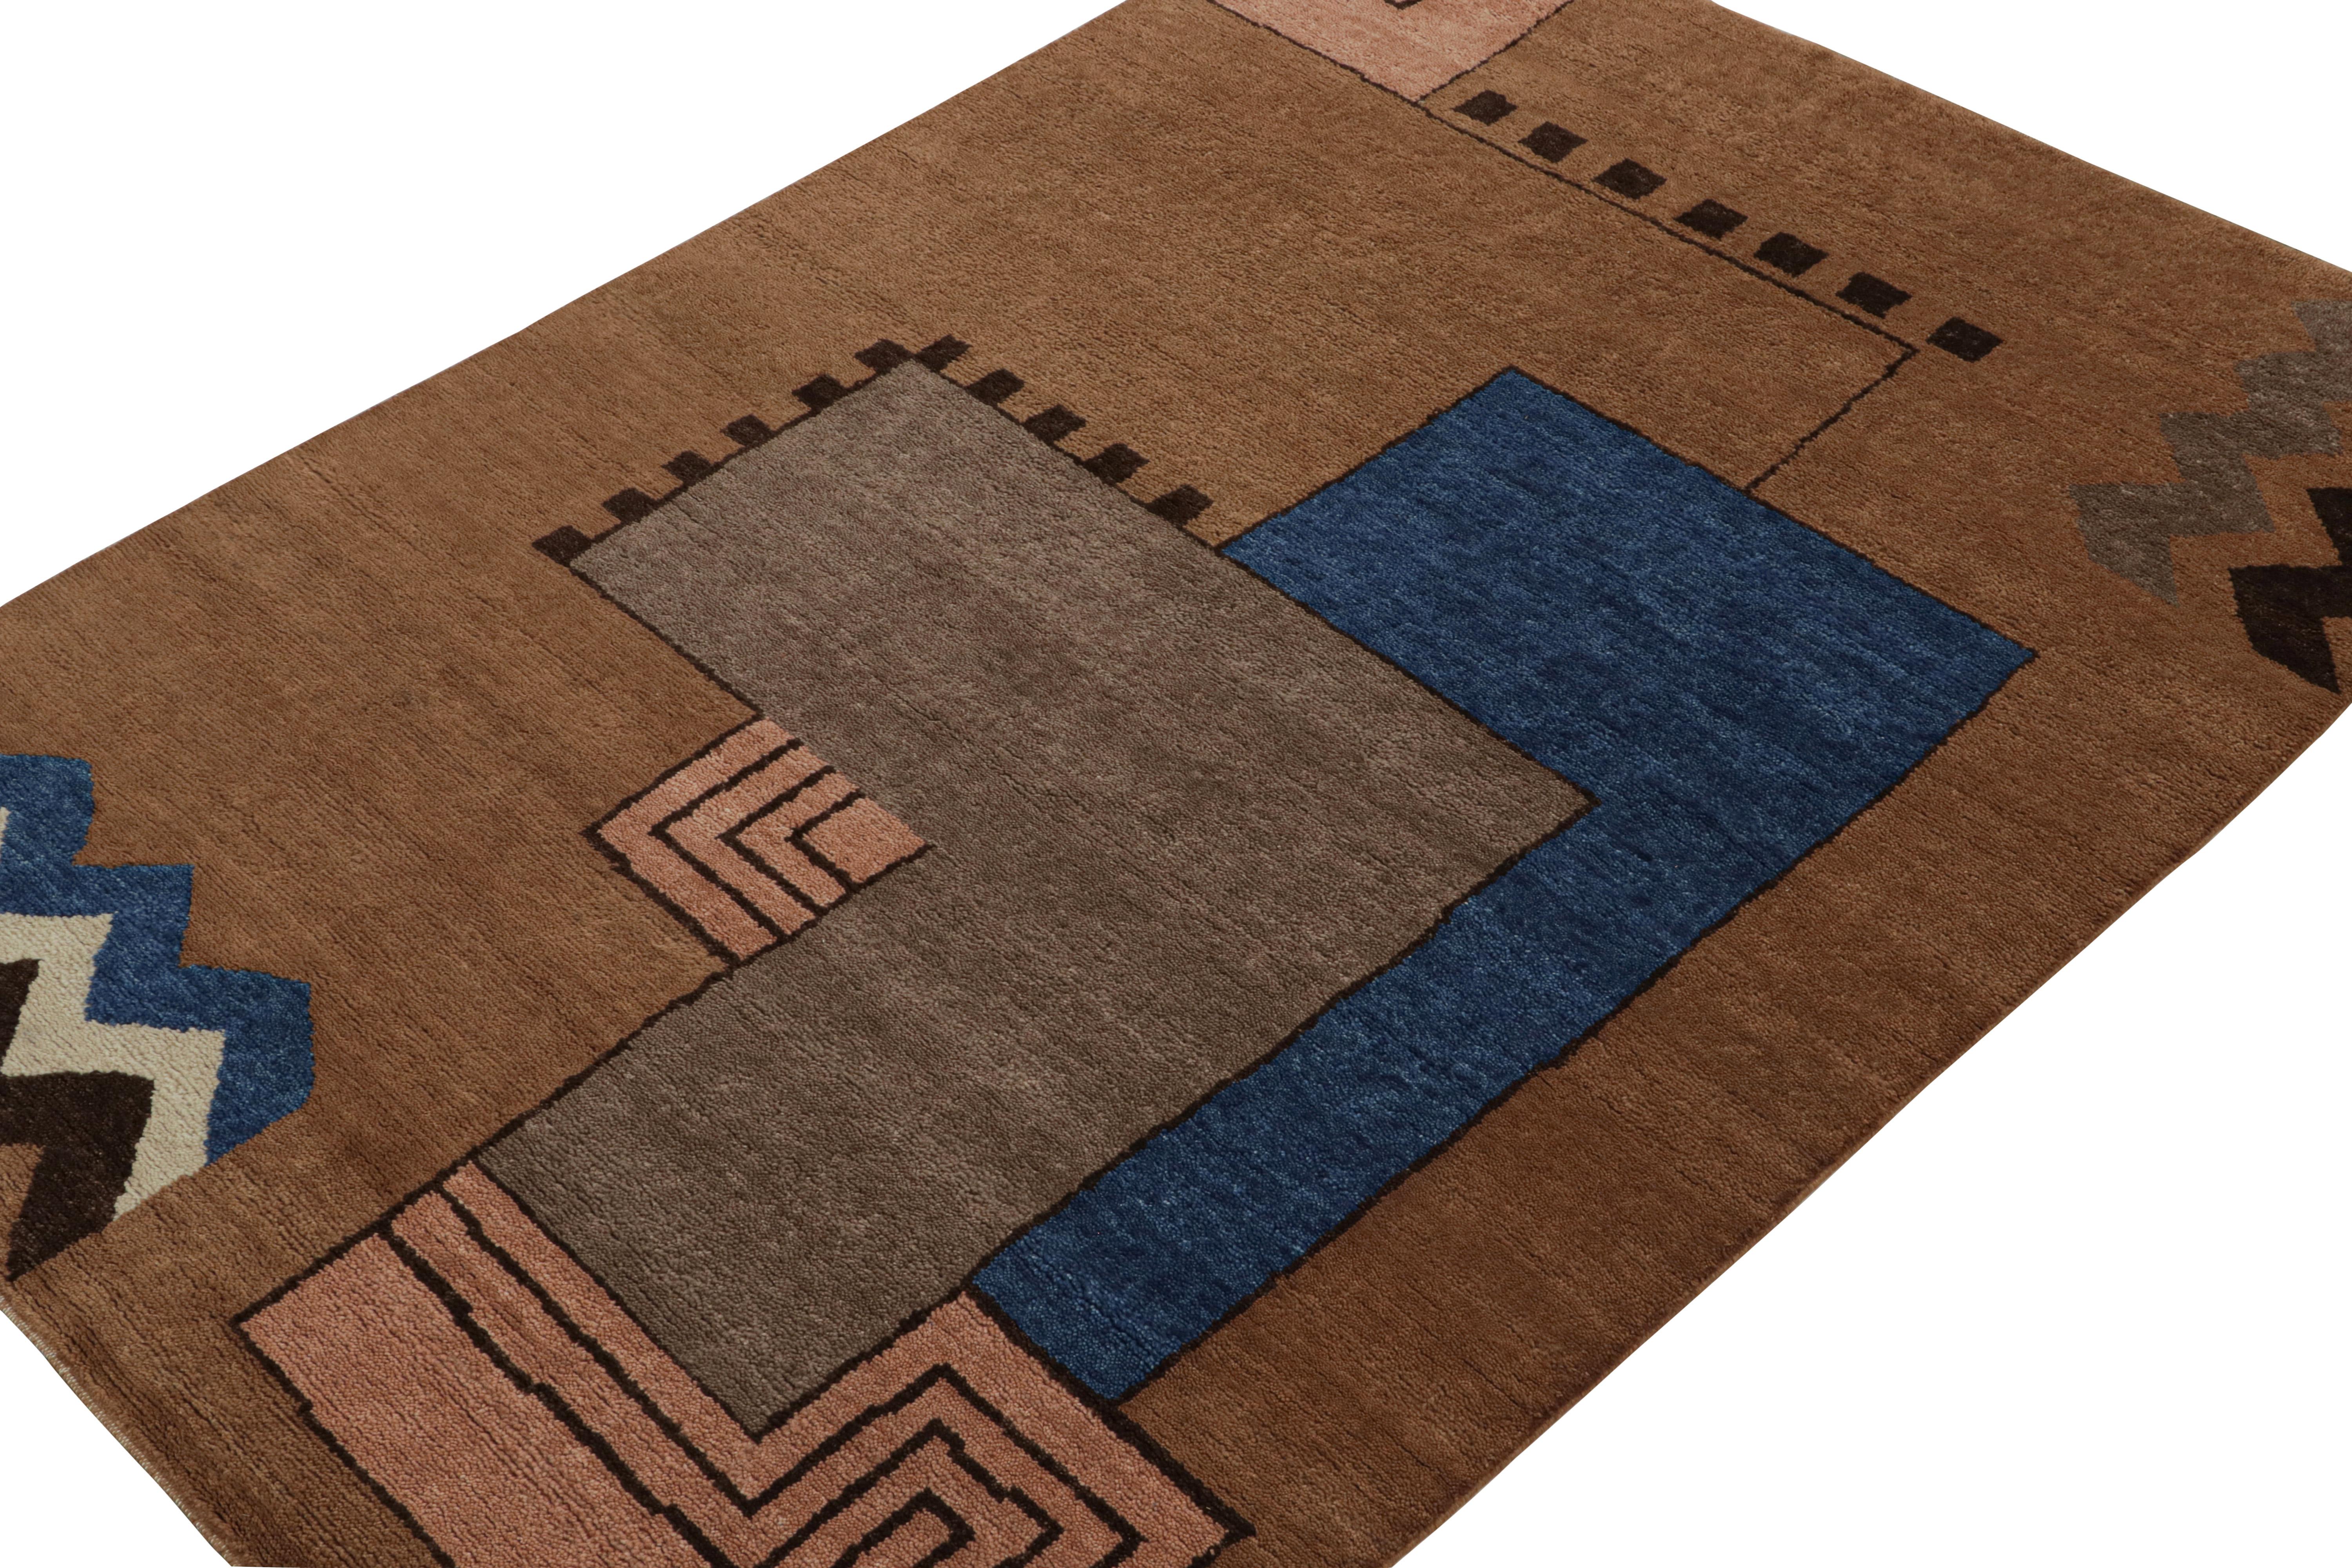 Dieser moderne, handgeknüpfte Wollteppich im Format 6x9 repräsentiert die französische Art-Déco-Teppichkollektion von Rug & Kilim.

Über das Design: 

Dieses besondere Stück ist von kubistischen Teppichen im Art-Déco-Stil der europäischen